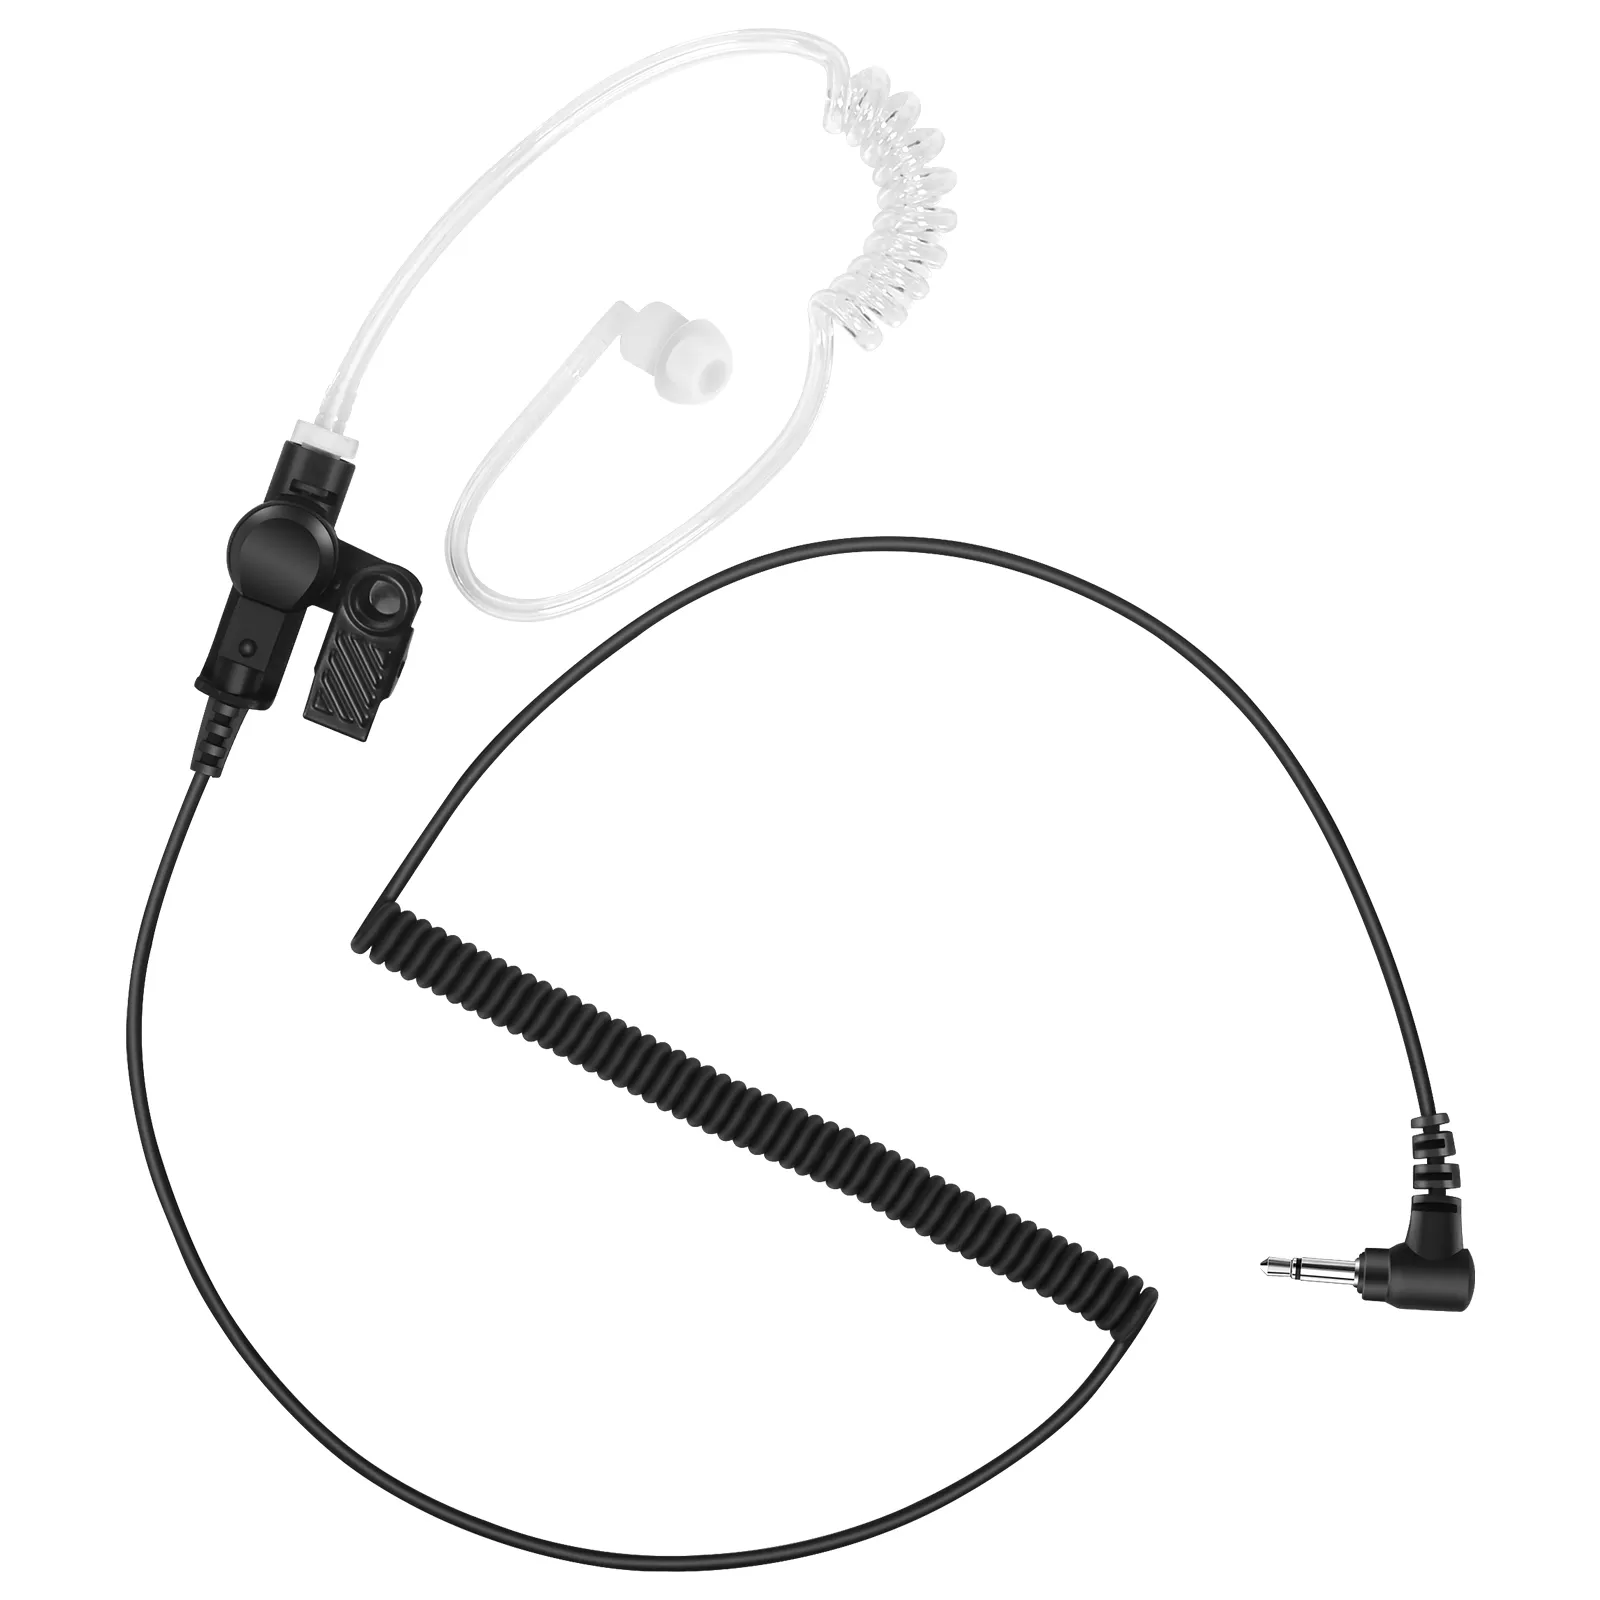 Écouteur radio bourgeon Type d'insertion écouteurs à réduction de bruit casque talkie-walkie écouteur radio bidirectionnel écouteur